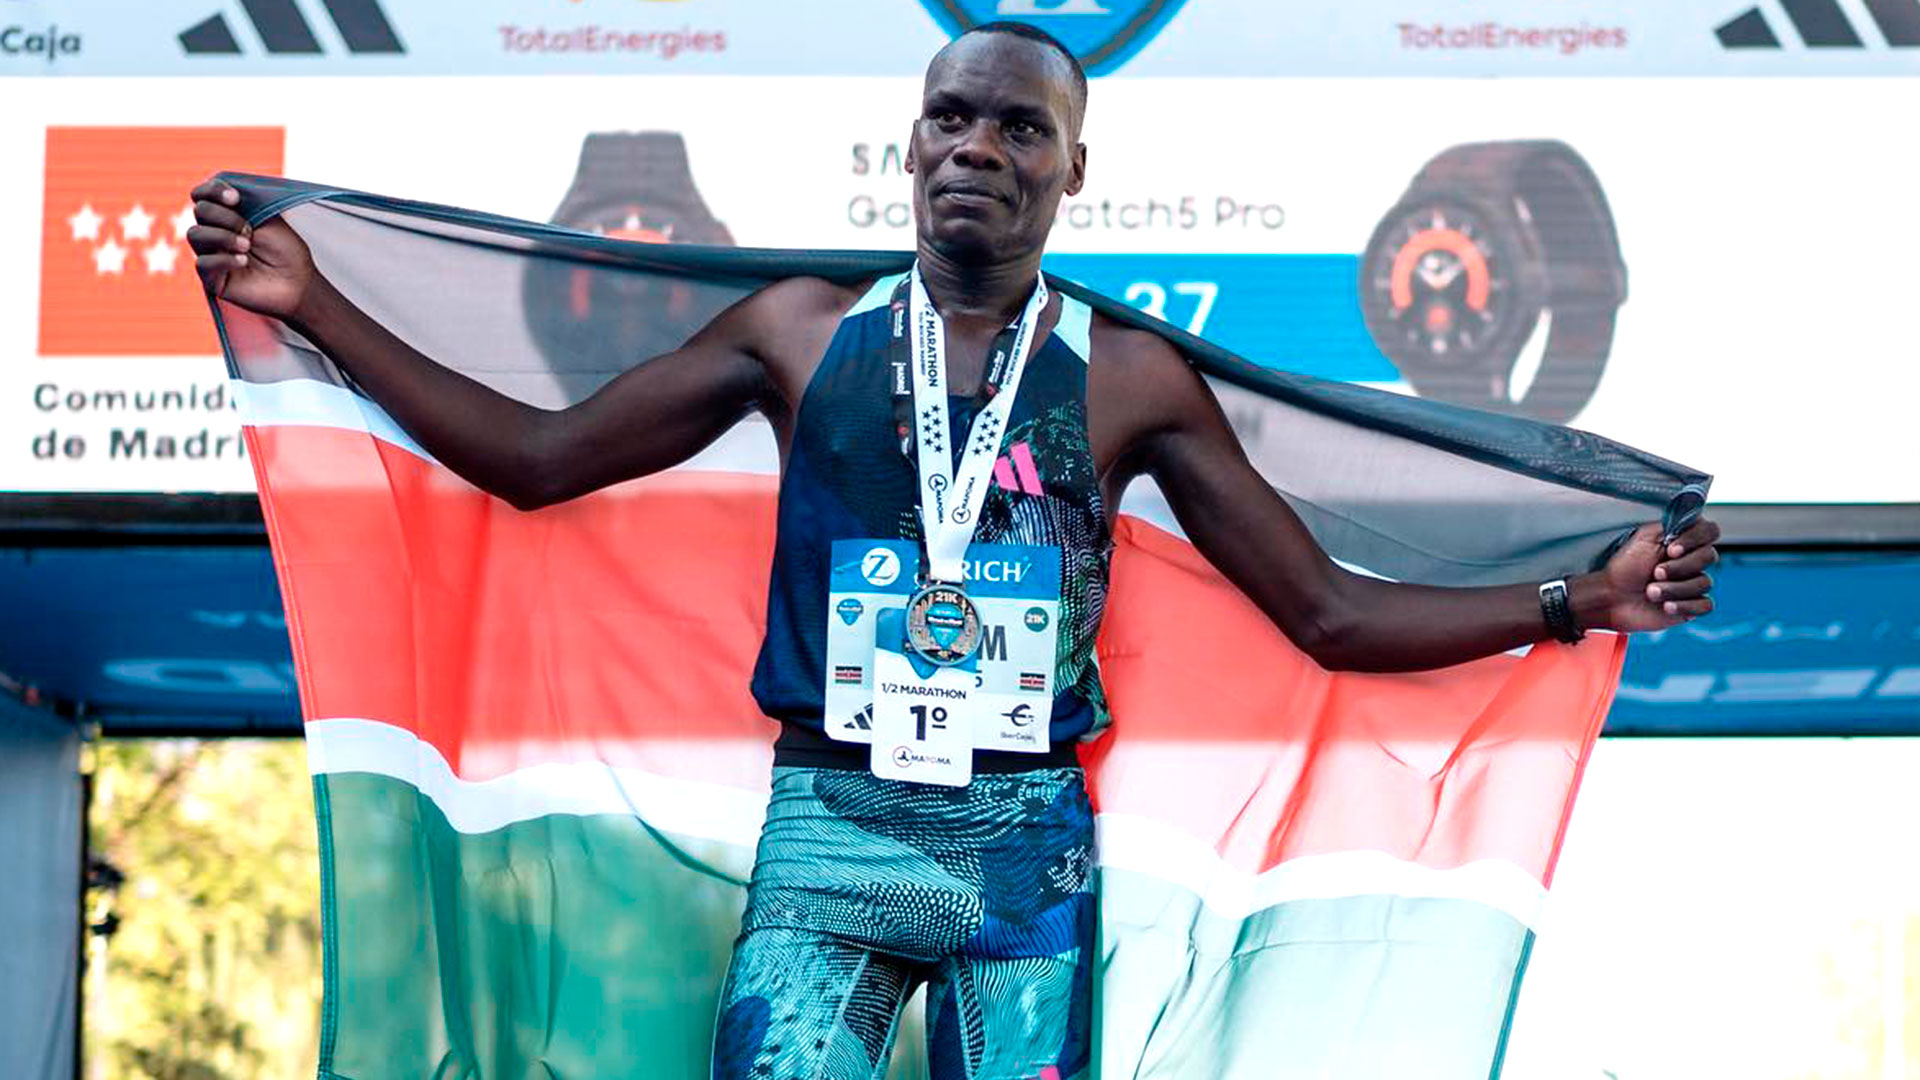 La impactante imagen de las piernas de dos corredores keniatas al finalizar una media maratón